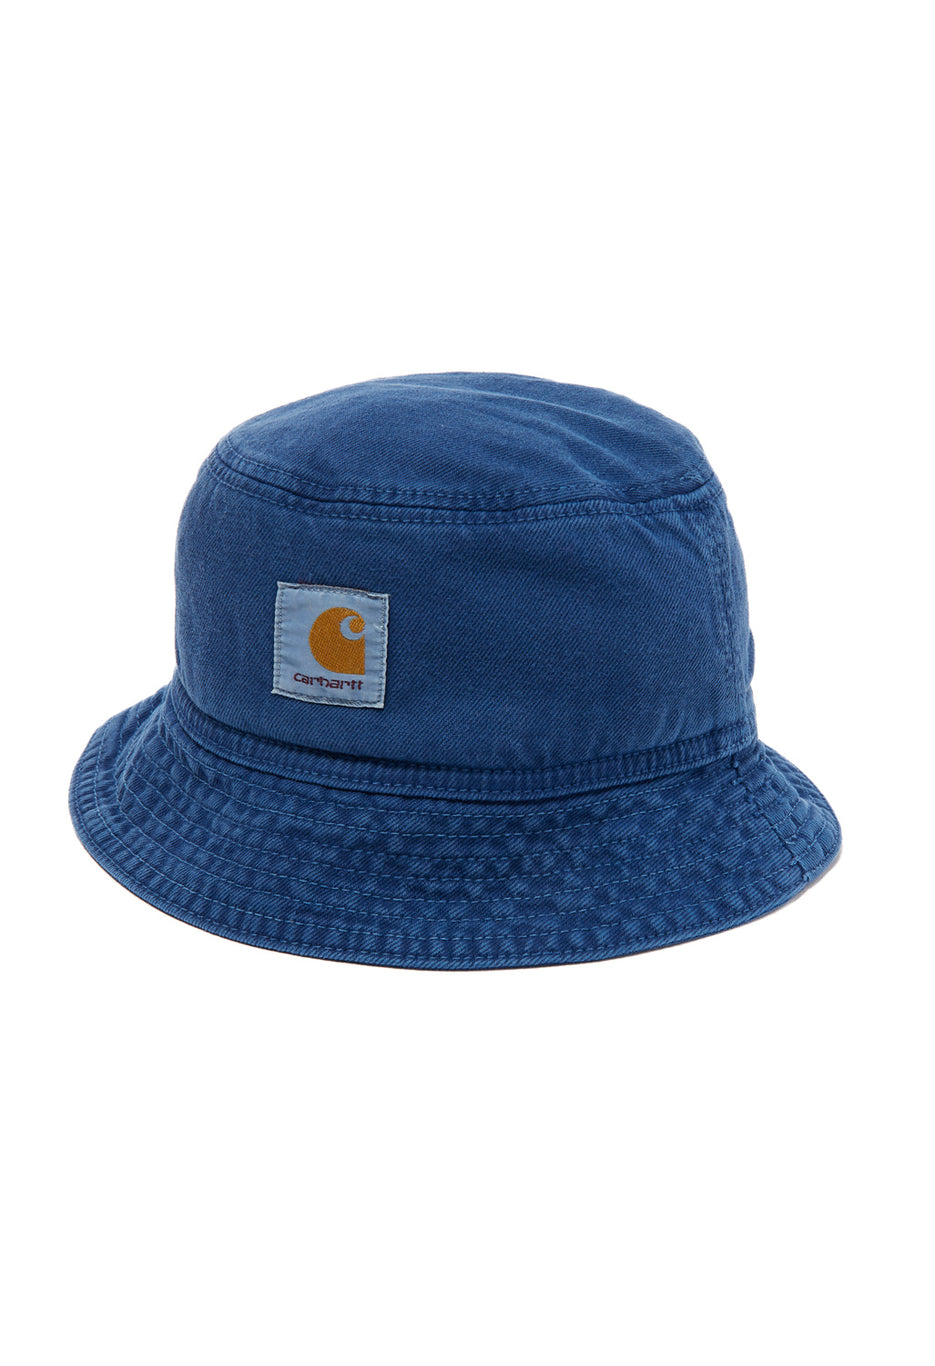 Carhartt WIP Garrison Bucket Hat - Elder - S/M